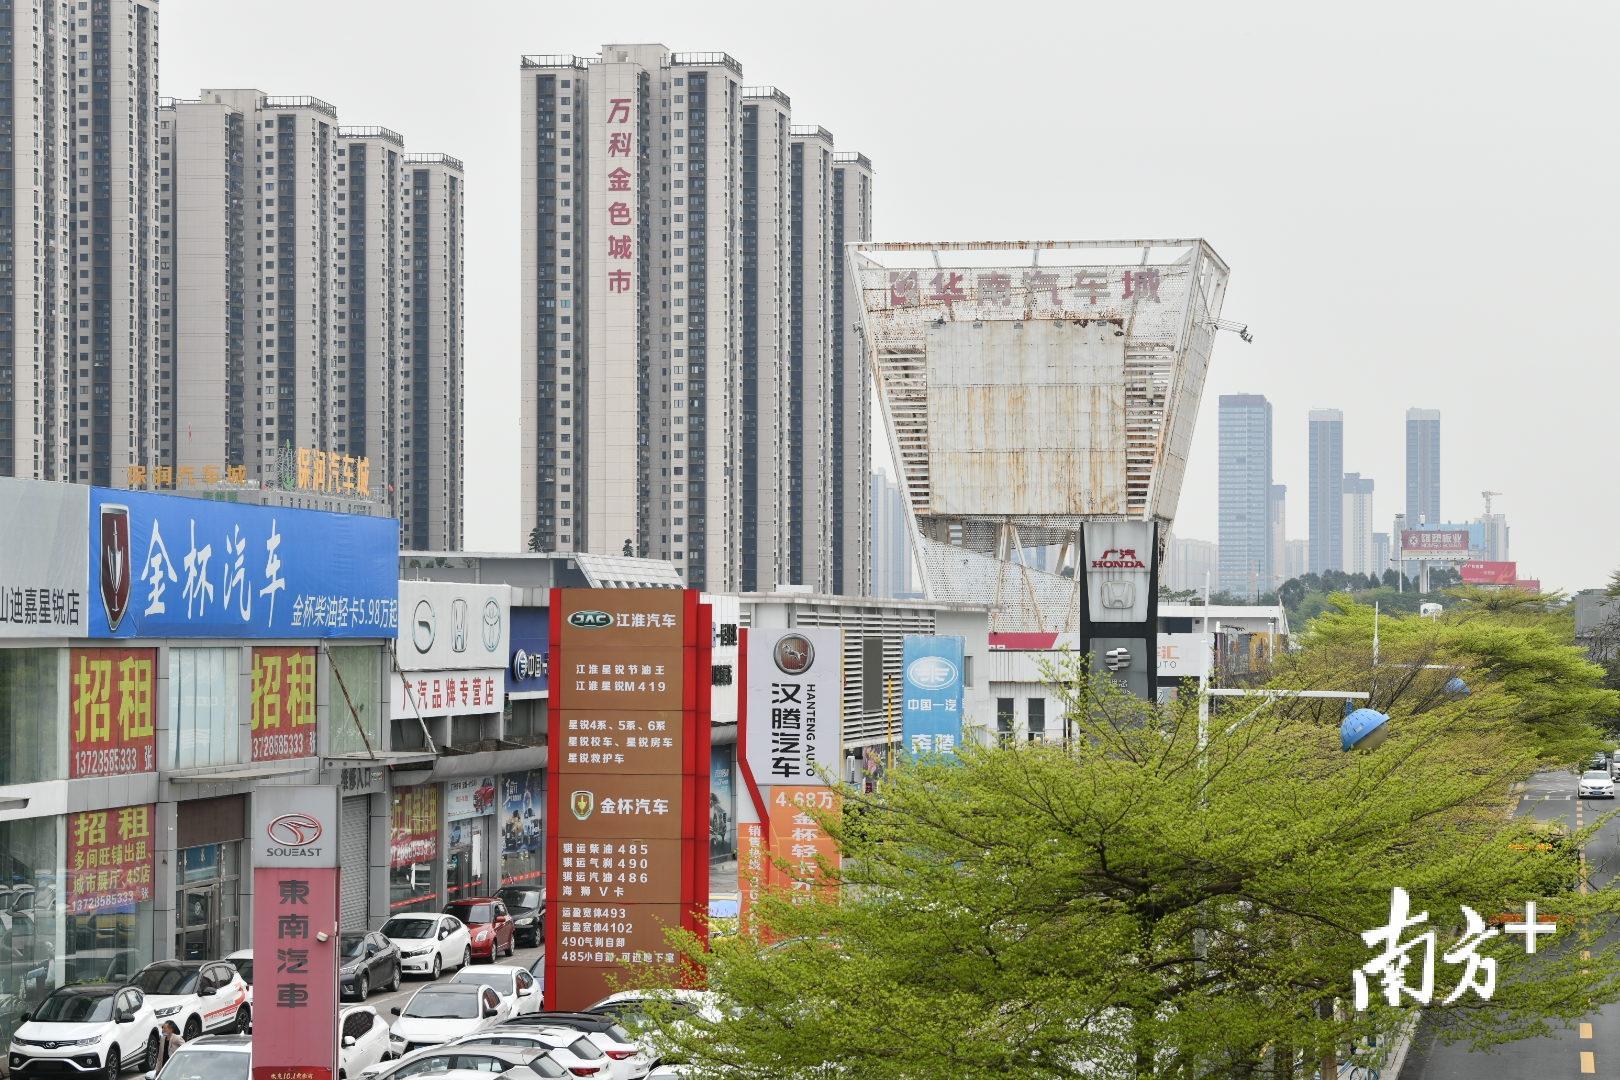 爱车小镇是桂城首个商业开发后不改变原有产业主题的“三旧”改造项目。戴嘉信 摄